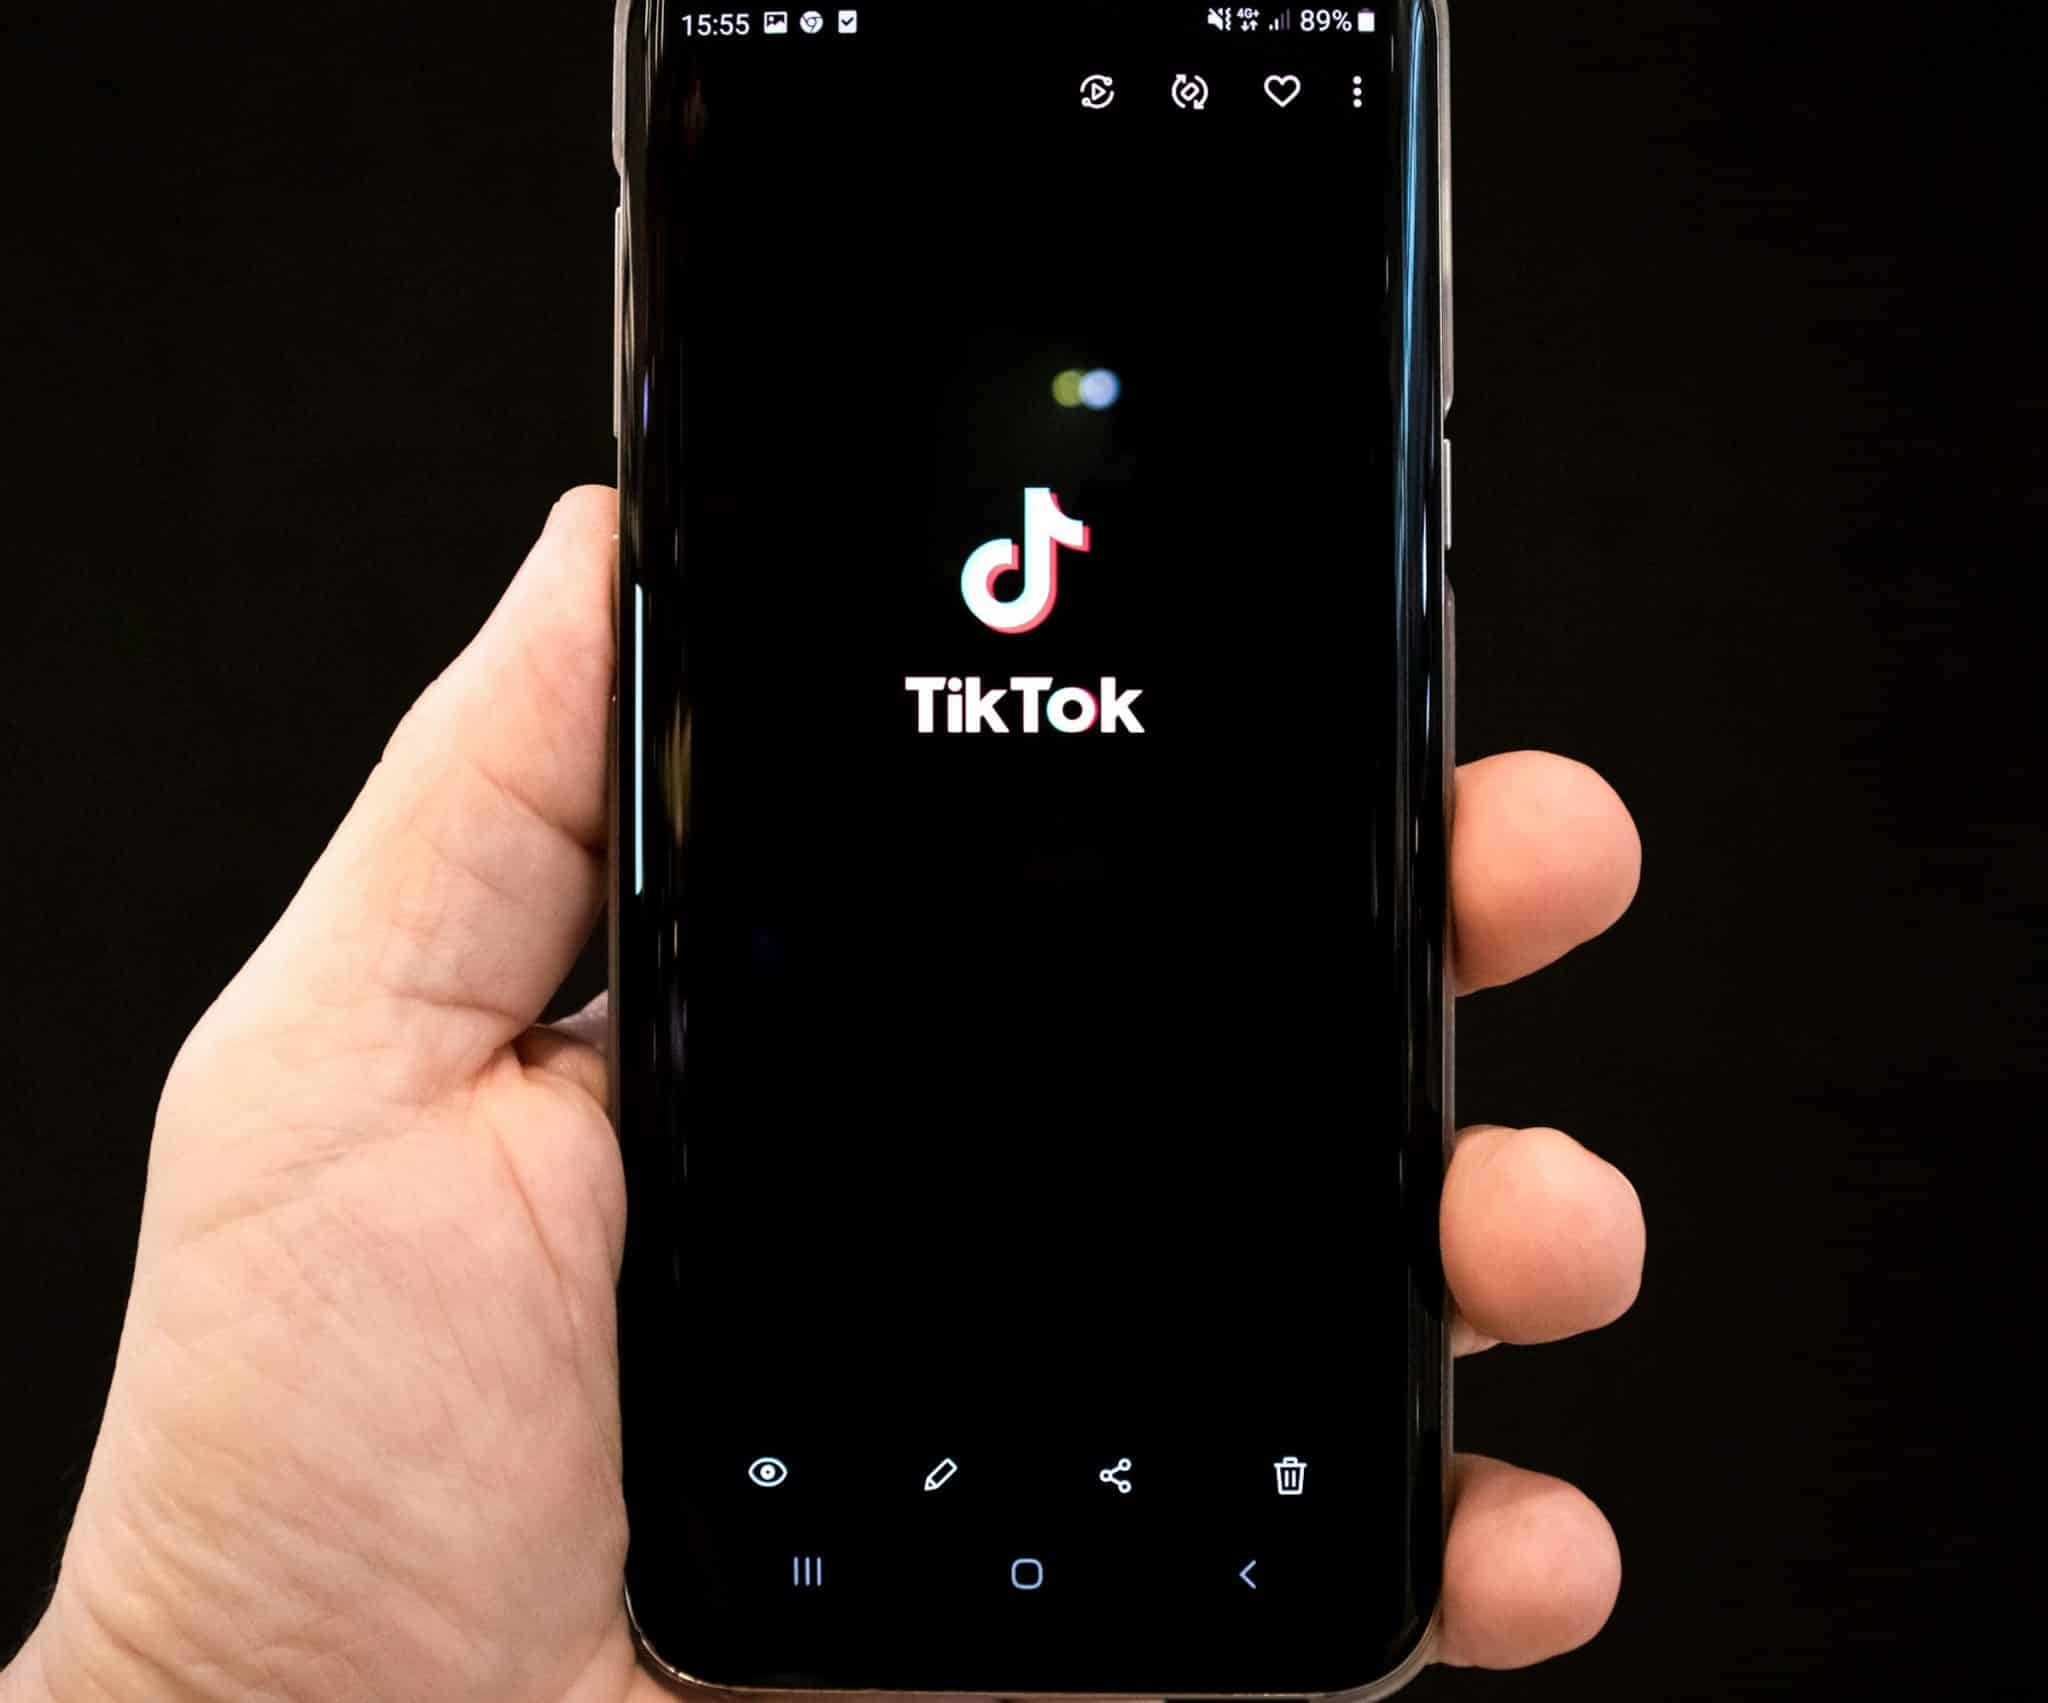 TikTok contesta na justiça lei que pode banir aplicativo nos EUA